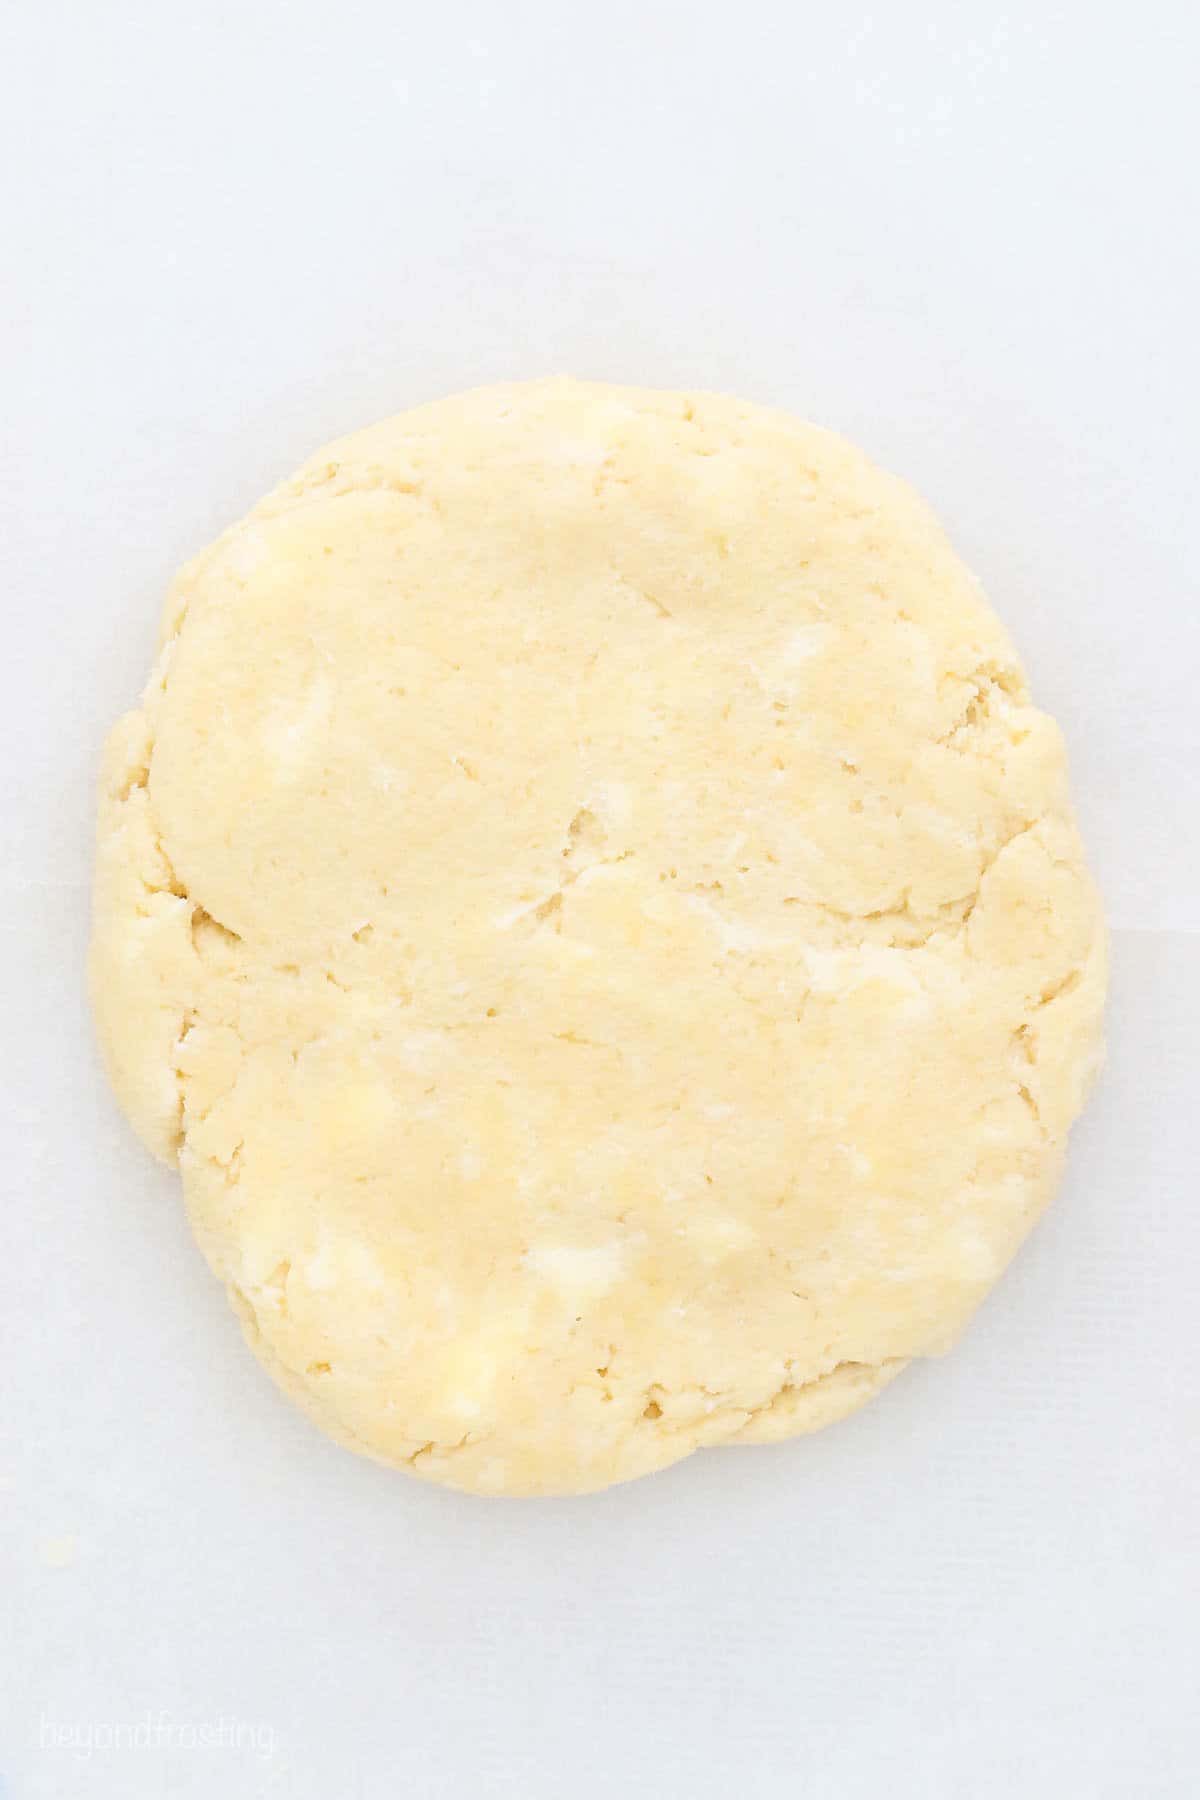 A disc of homemade butter pie dough